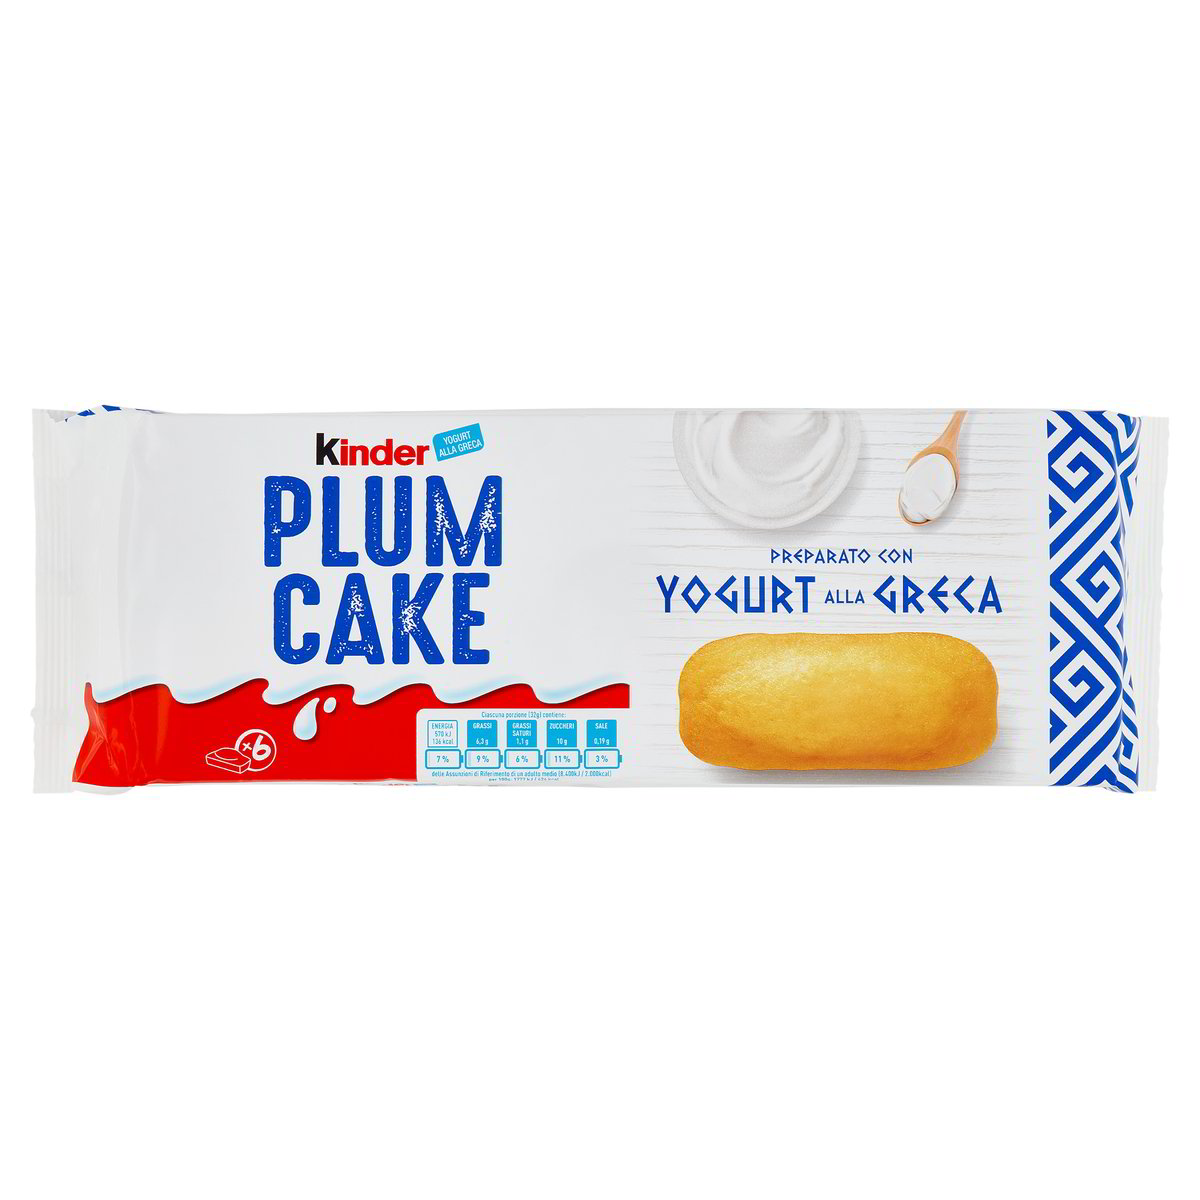 PlumCake Preparato con Yogurt alla Greca